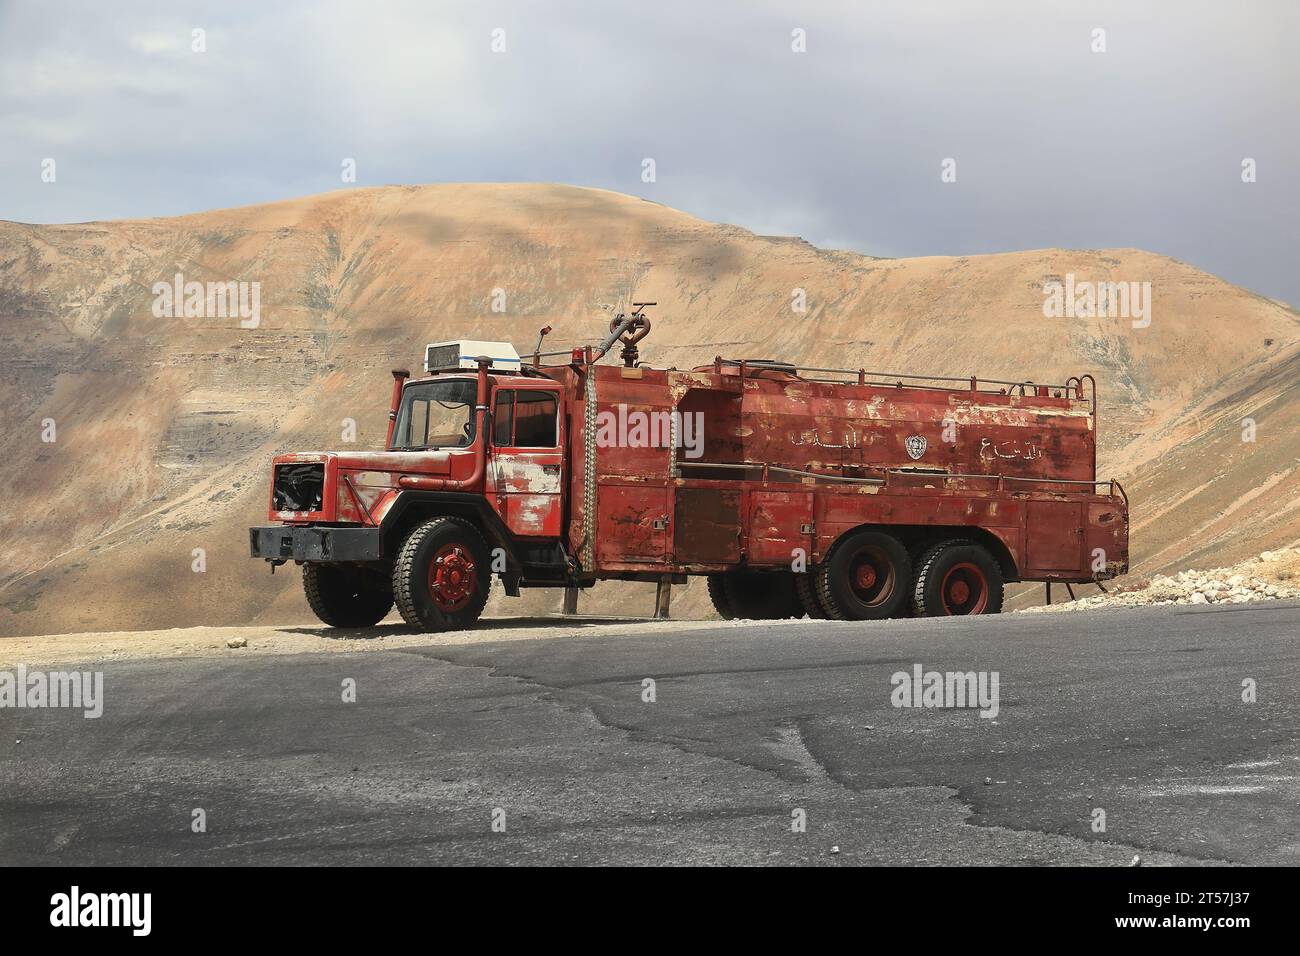 Un camion dei pompieri della difesa civile libanese parcheggiato su una strada nelle brughiere. Foto Stock